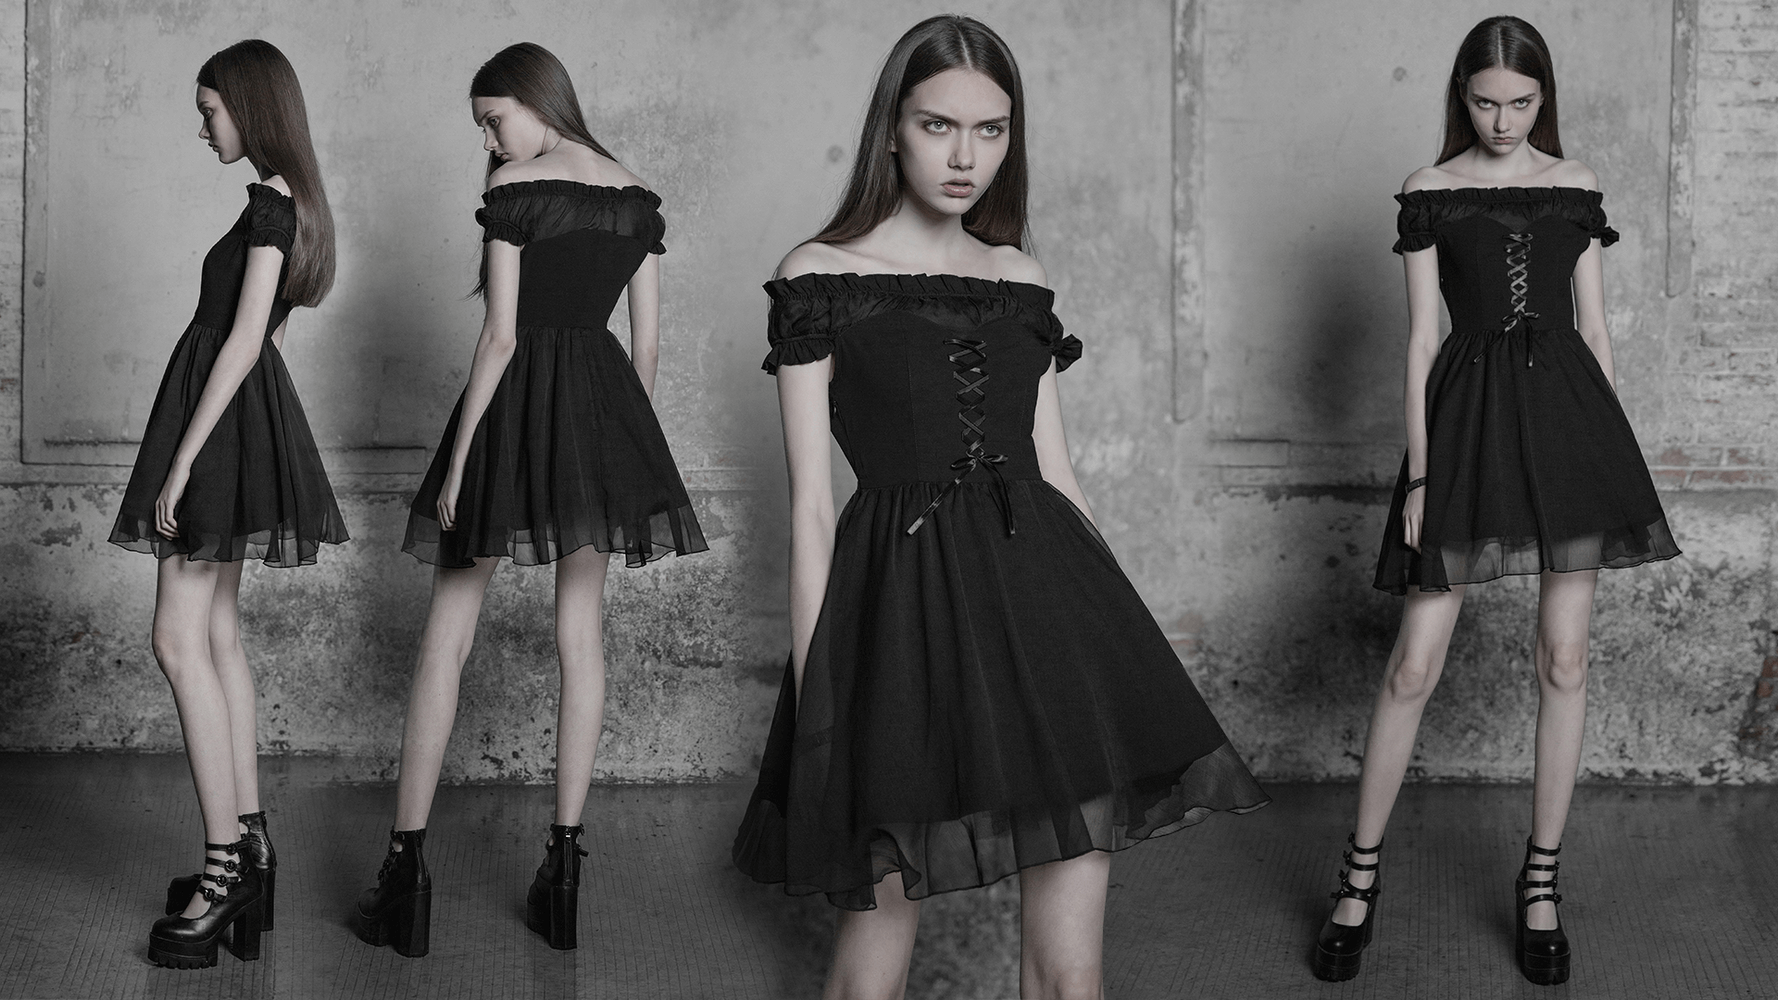 Elegant Punk Rave Gothic Black Off-Shoulder Dress